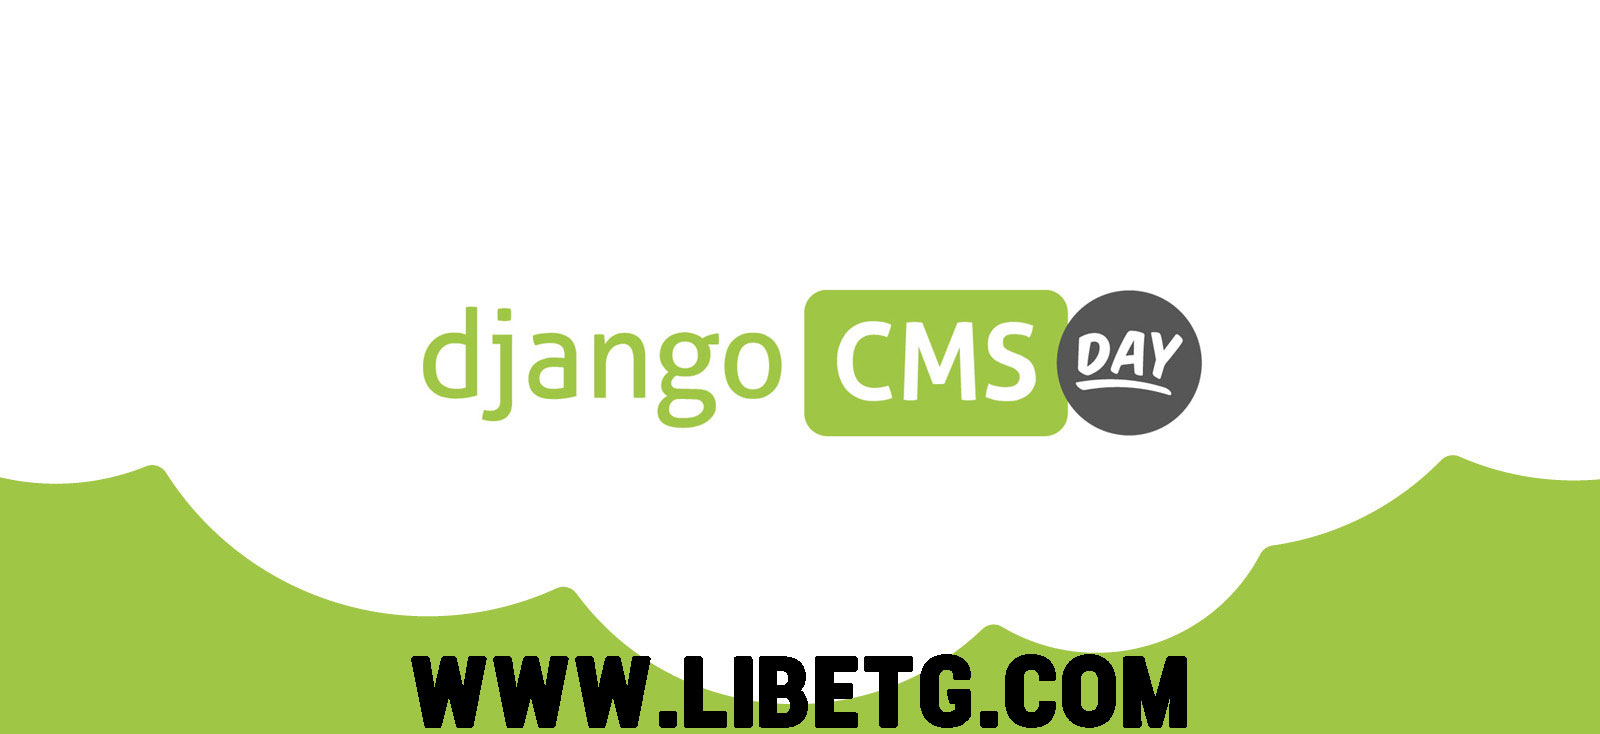 Django CMS: Solusi Terbaik untuk Membuat Website